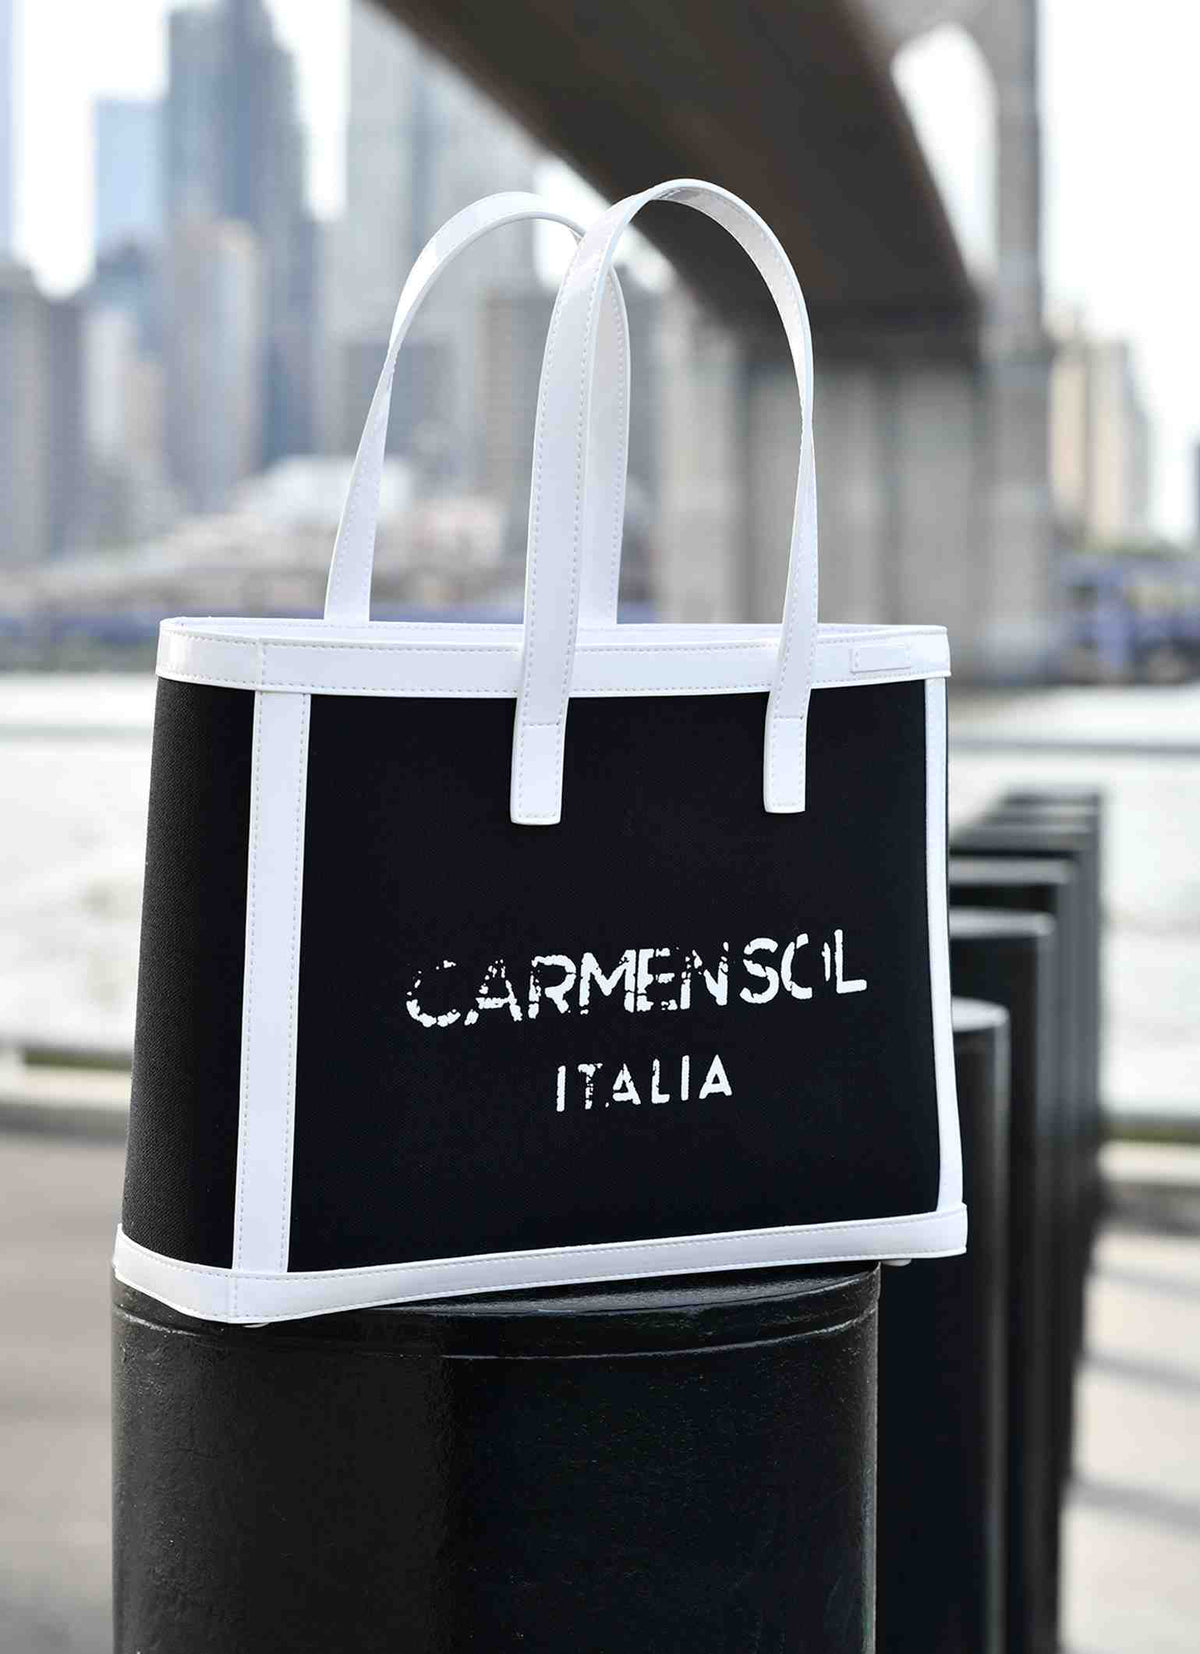 Carmen Sol vegan Venezia beach bags for women in white